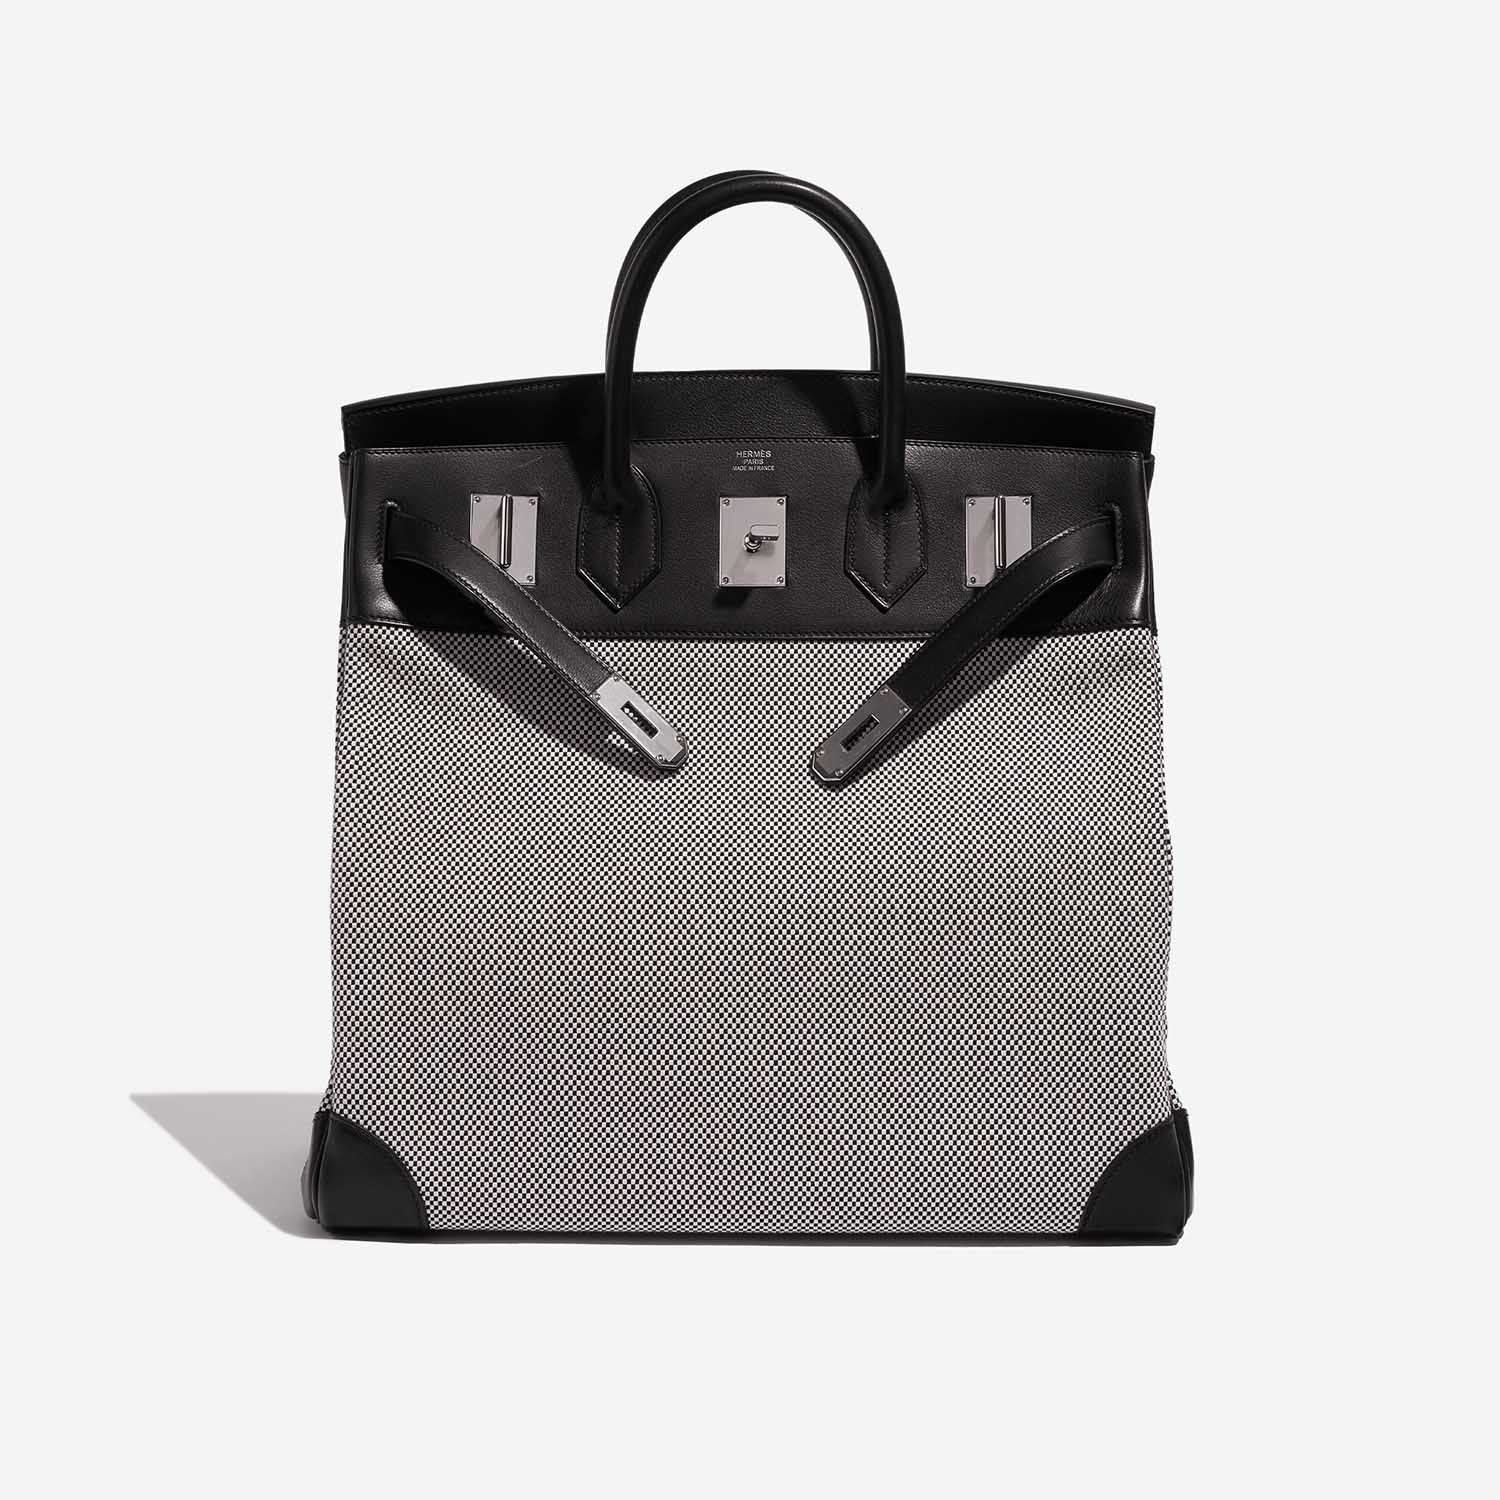 Pre-owned Hermès bag Haut à Courroies 40 Toile Criss / Veau Evergrain Black / Ecru Grey Front Open | Sell your designer bag on Saclab.com